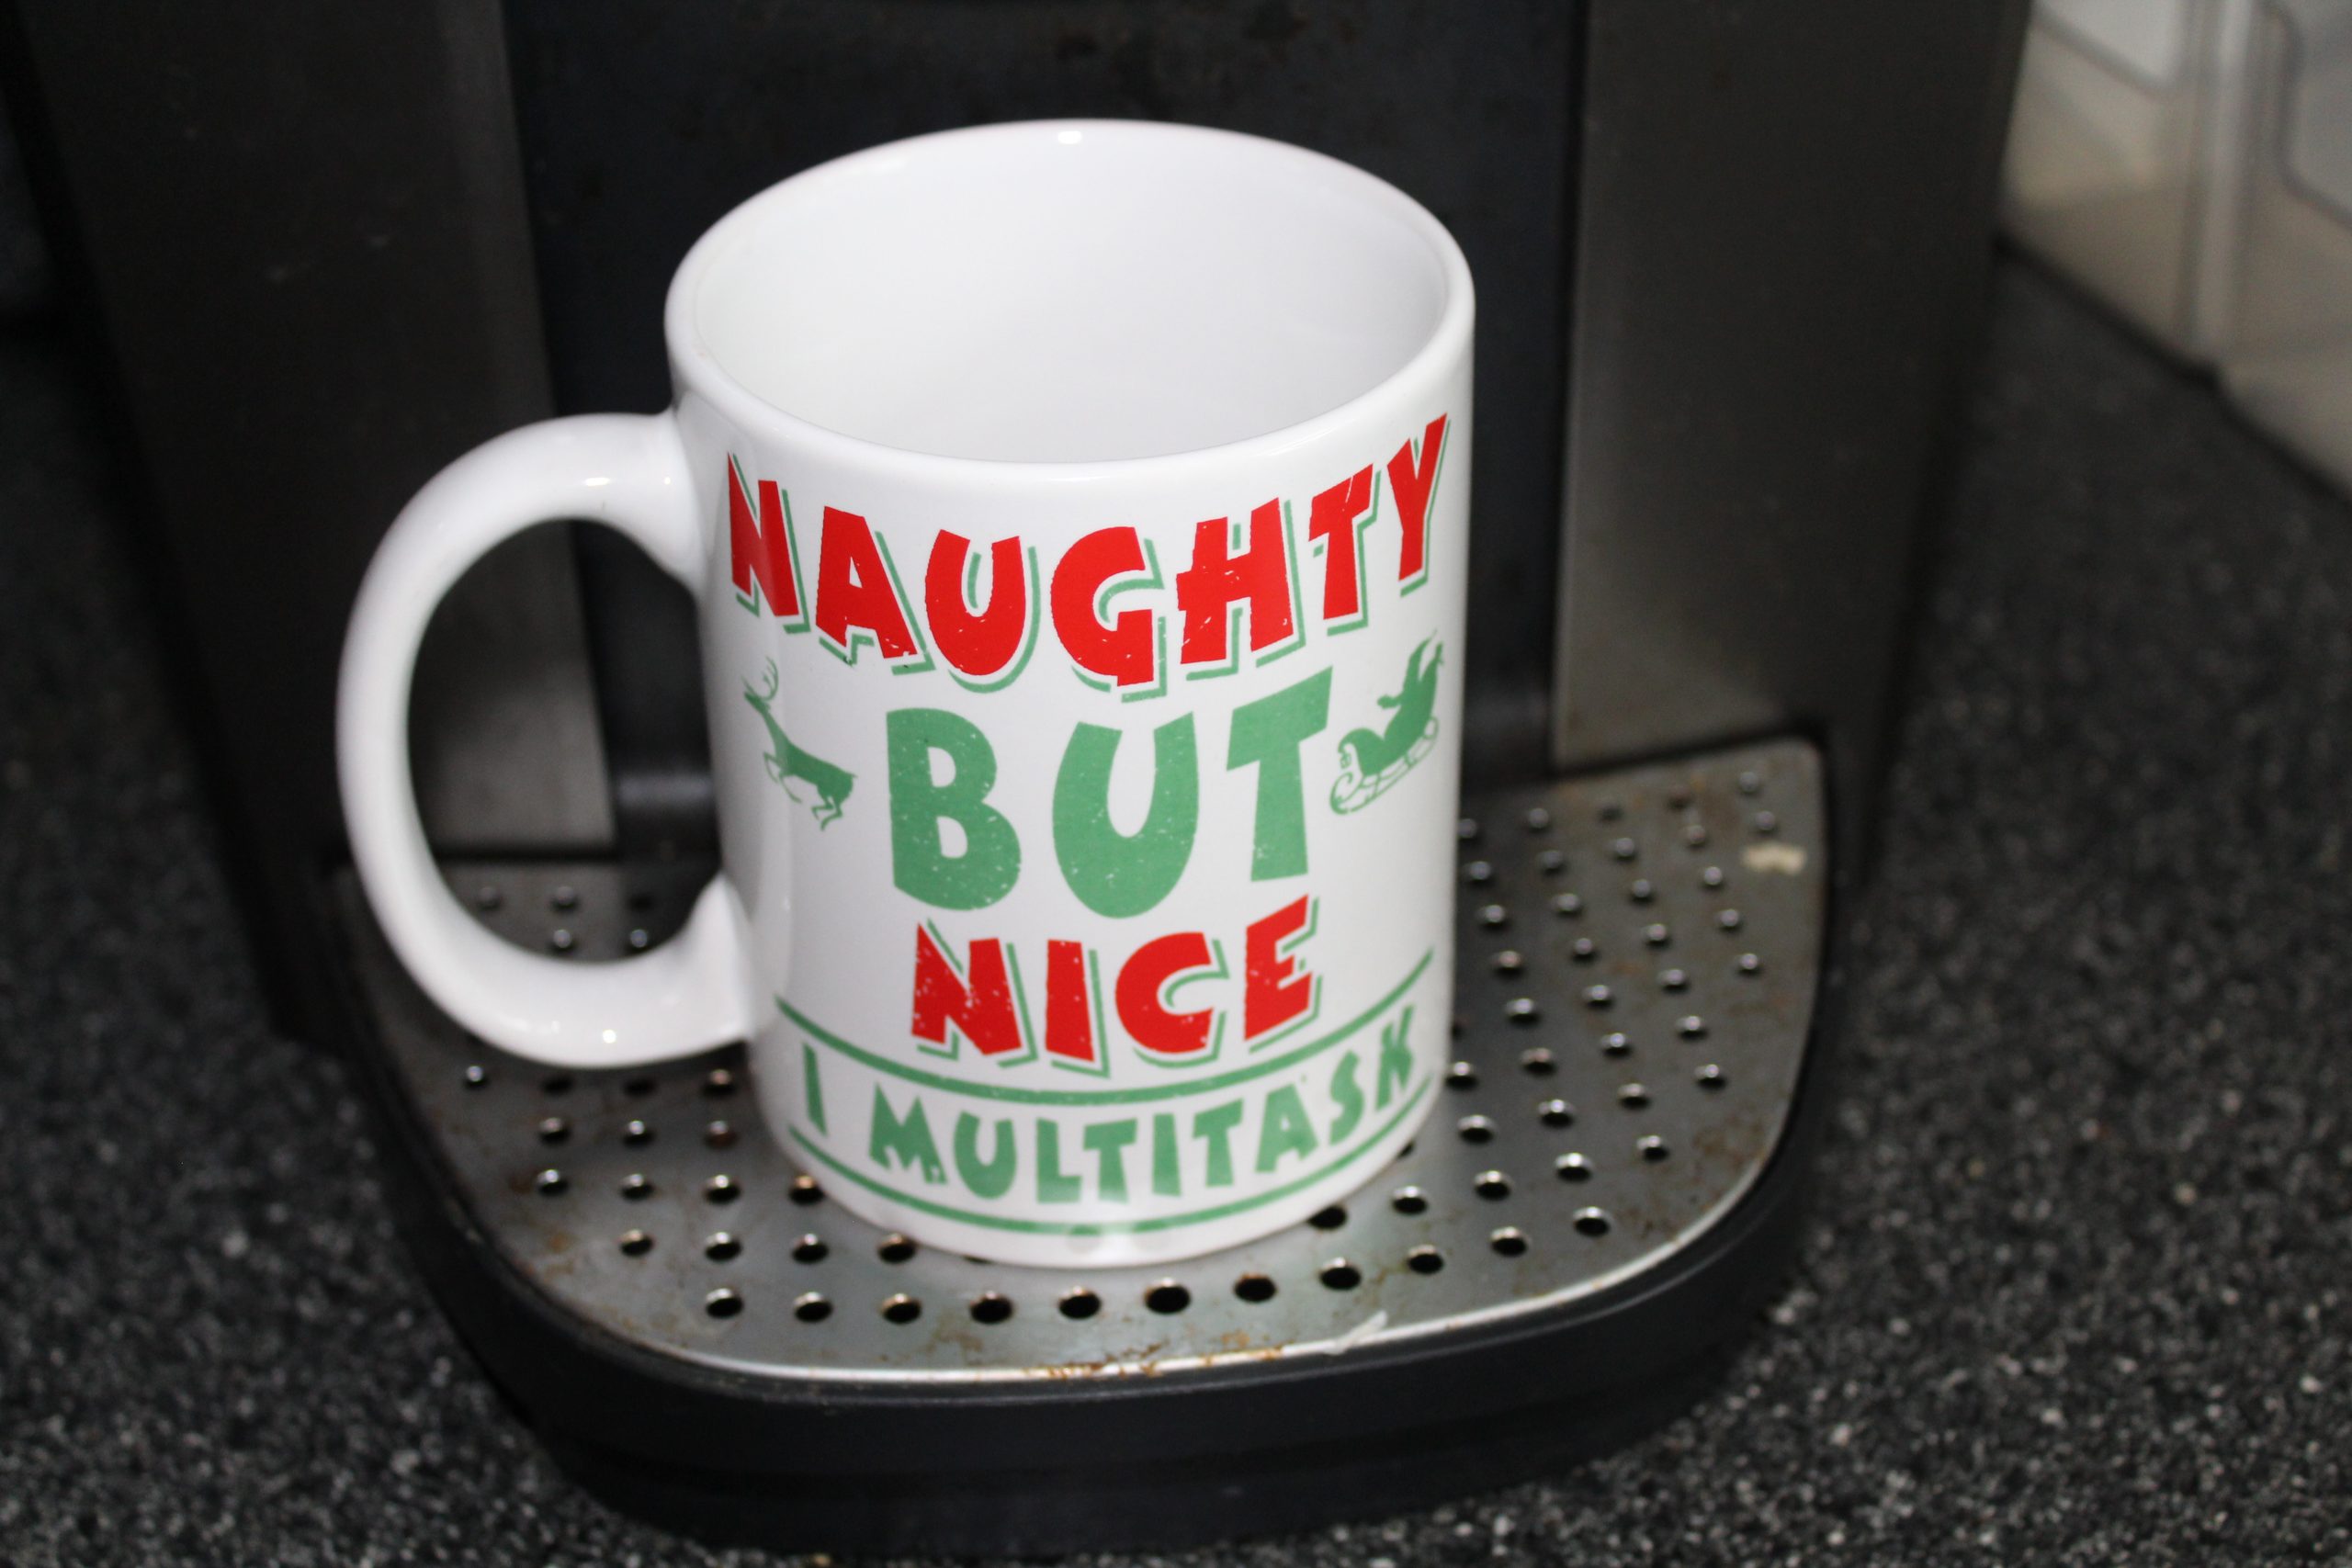 Naughty But Nice, I Multitask – Merry Christmas Funny Cat Mug #Review #chirstmasmug #christmasgift #naughtychristmas #HGG19